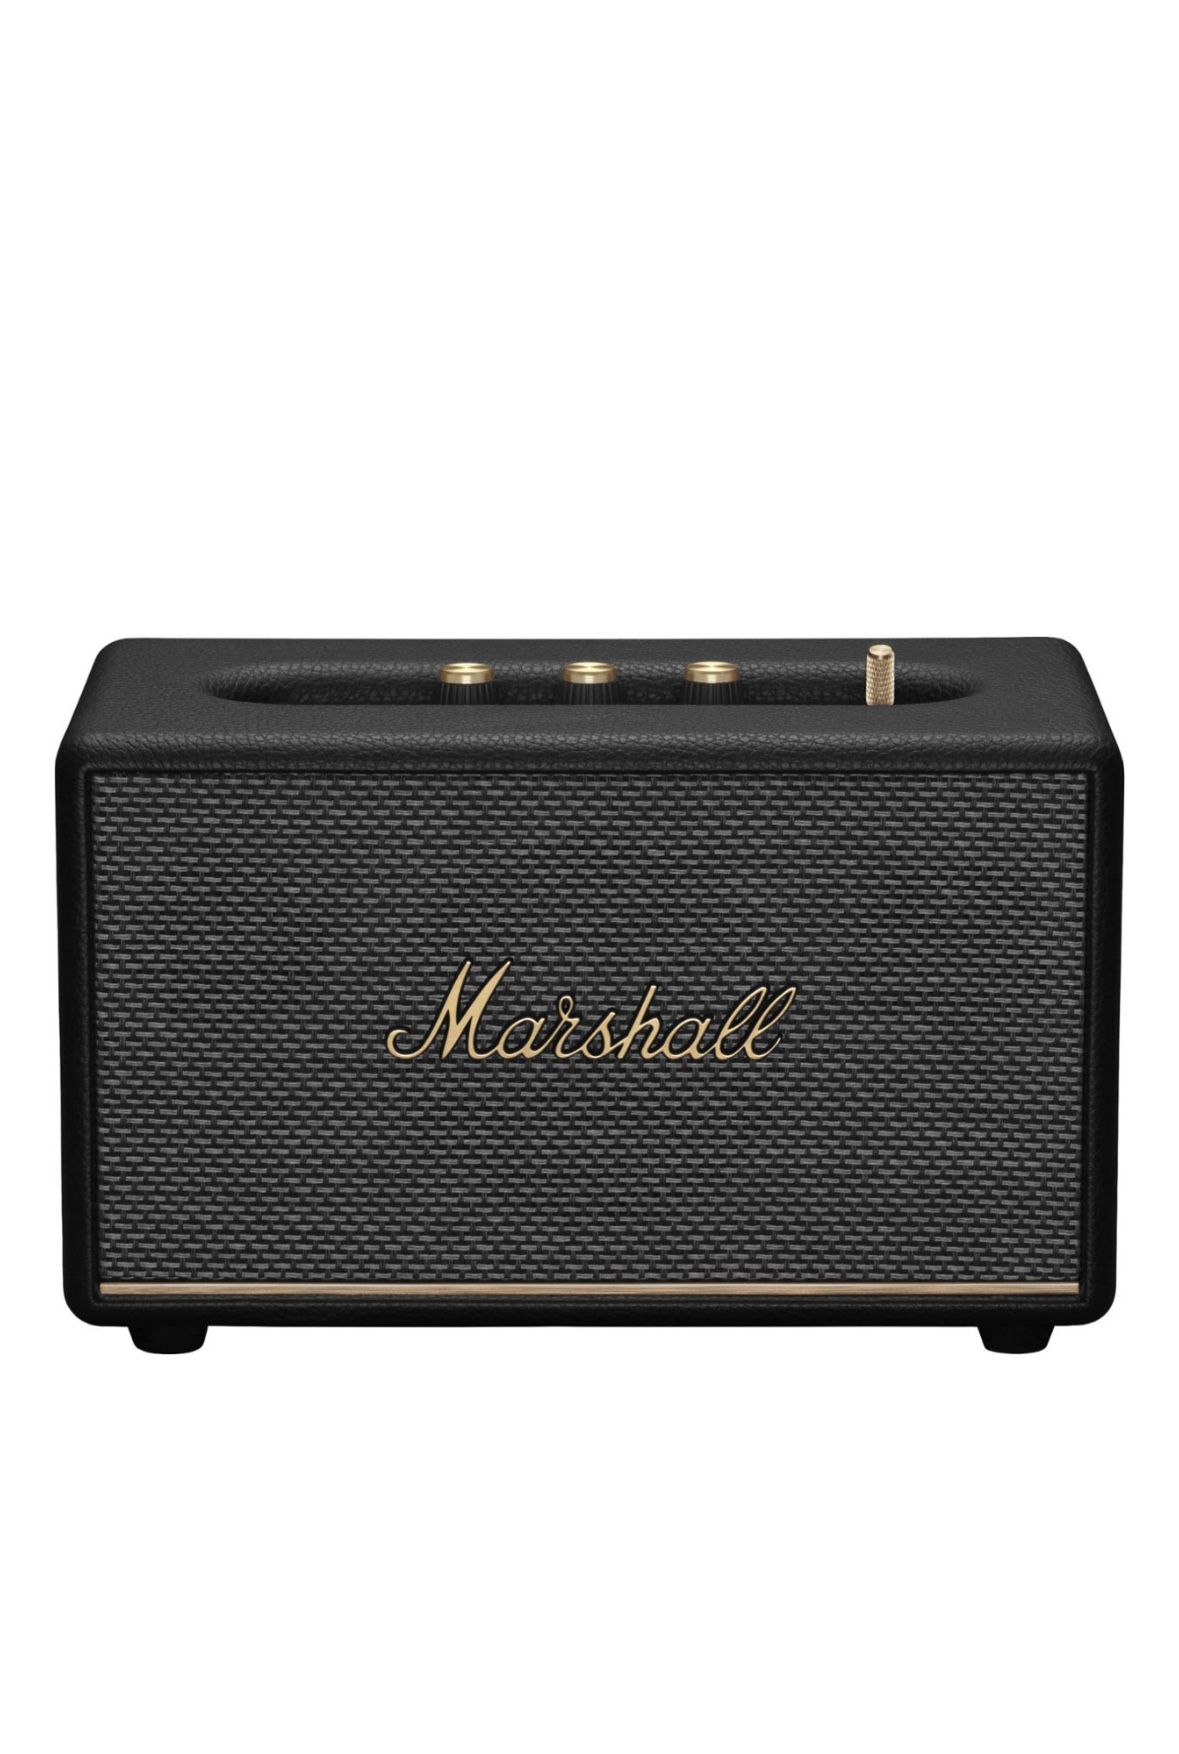 Marshall 1006008 Bluetooth Speaker - Black